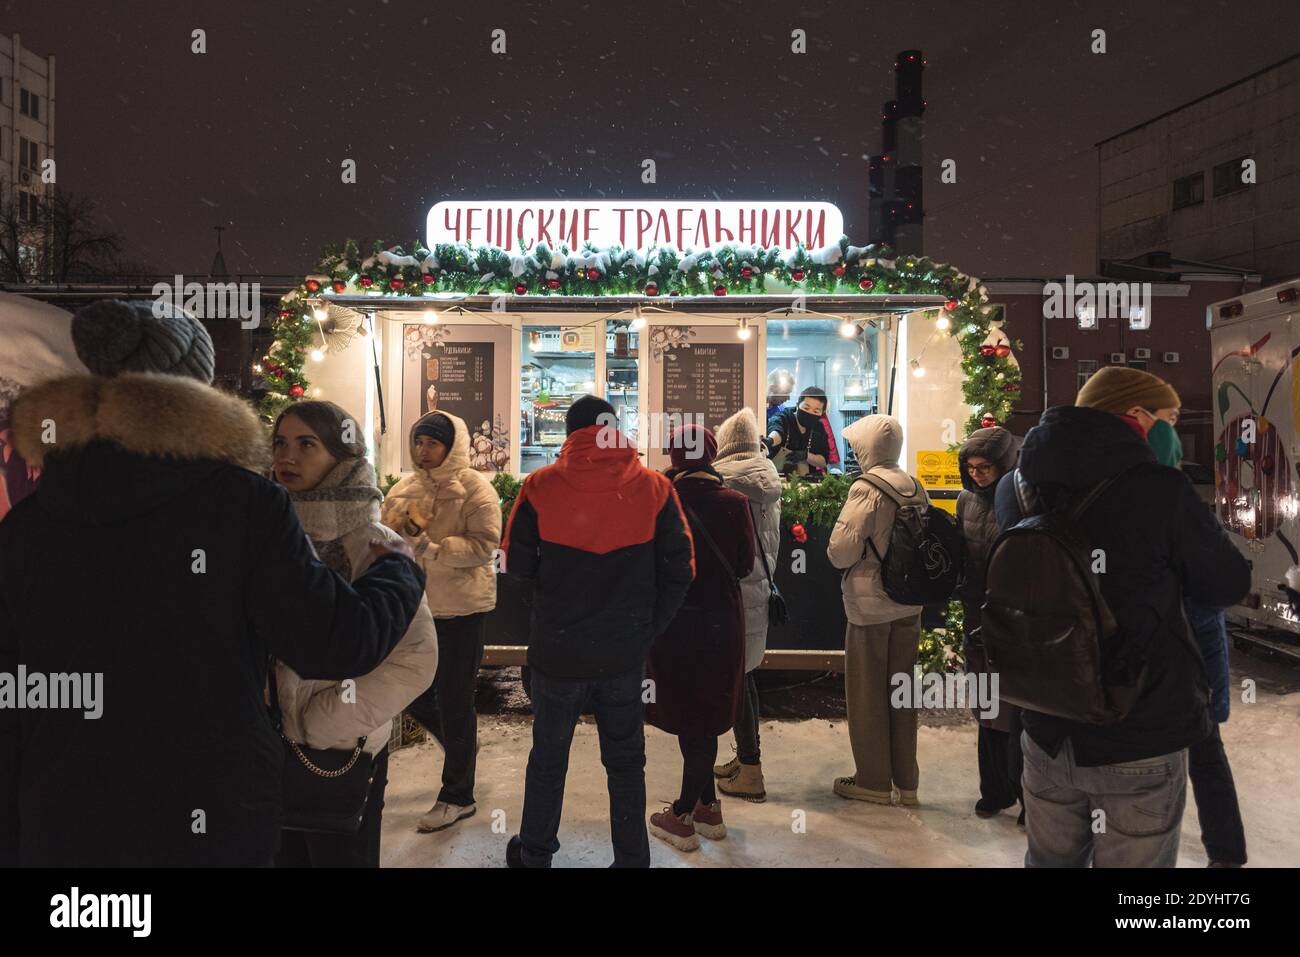 San Pietroburgo, Russia - 26 dicembre 2020: I giovani si levano in fila per la pasticceria ceca (trdelniks) in un negozio di strada di notte Sevkabel Port. Foto Stock